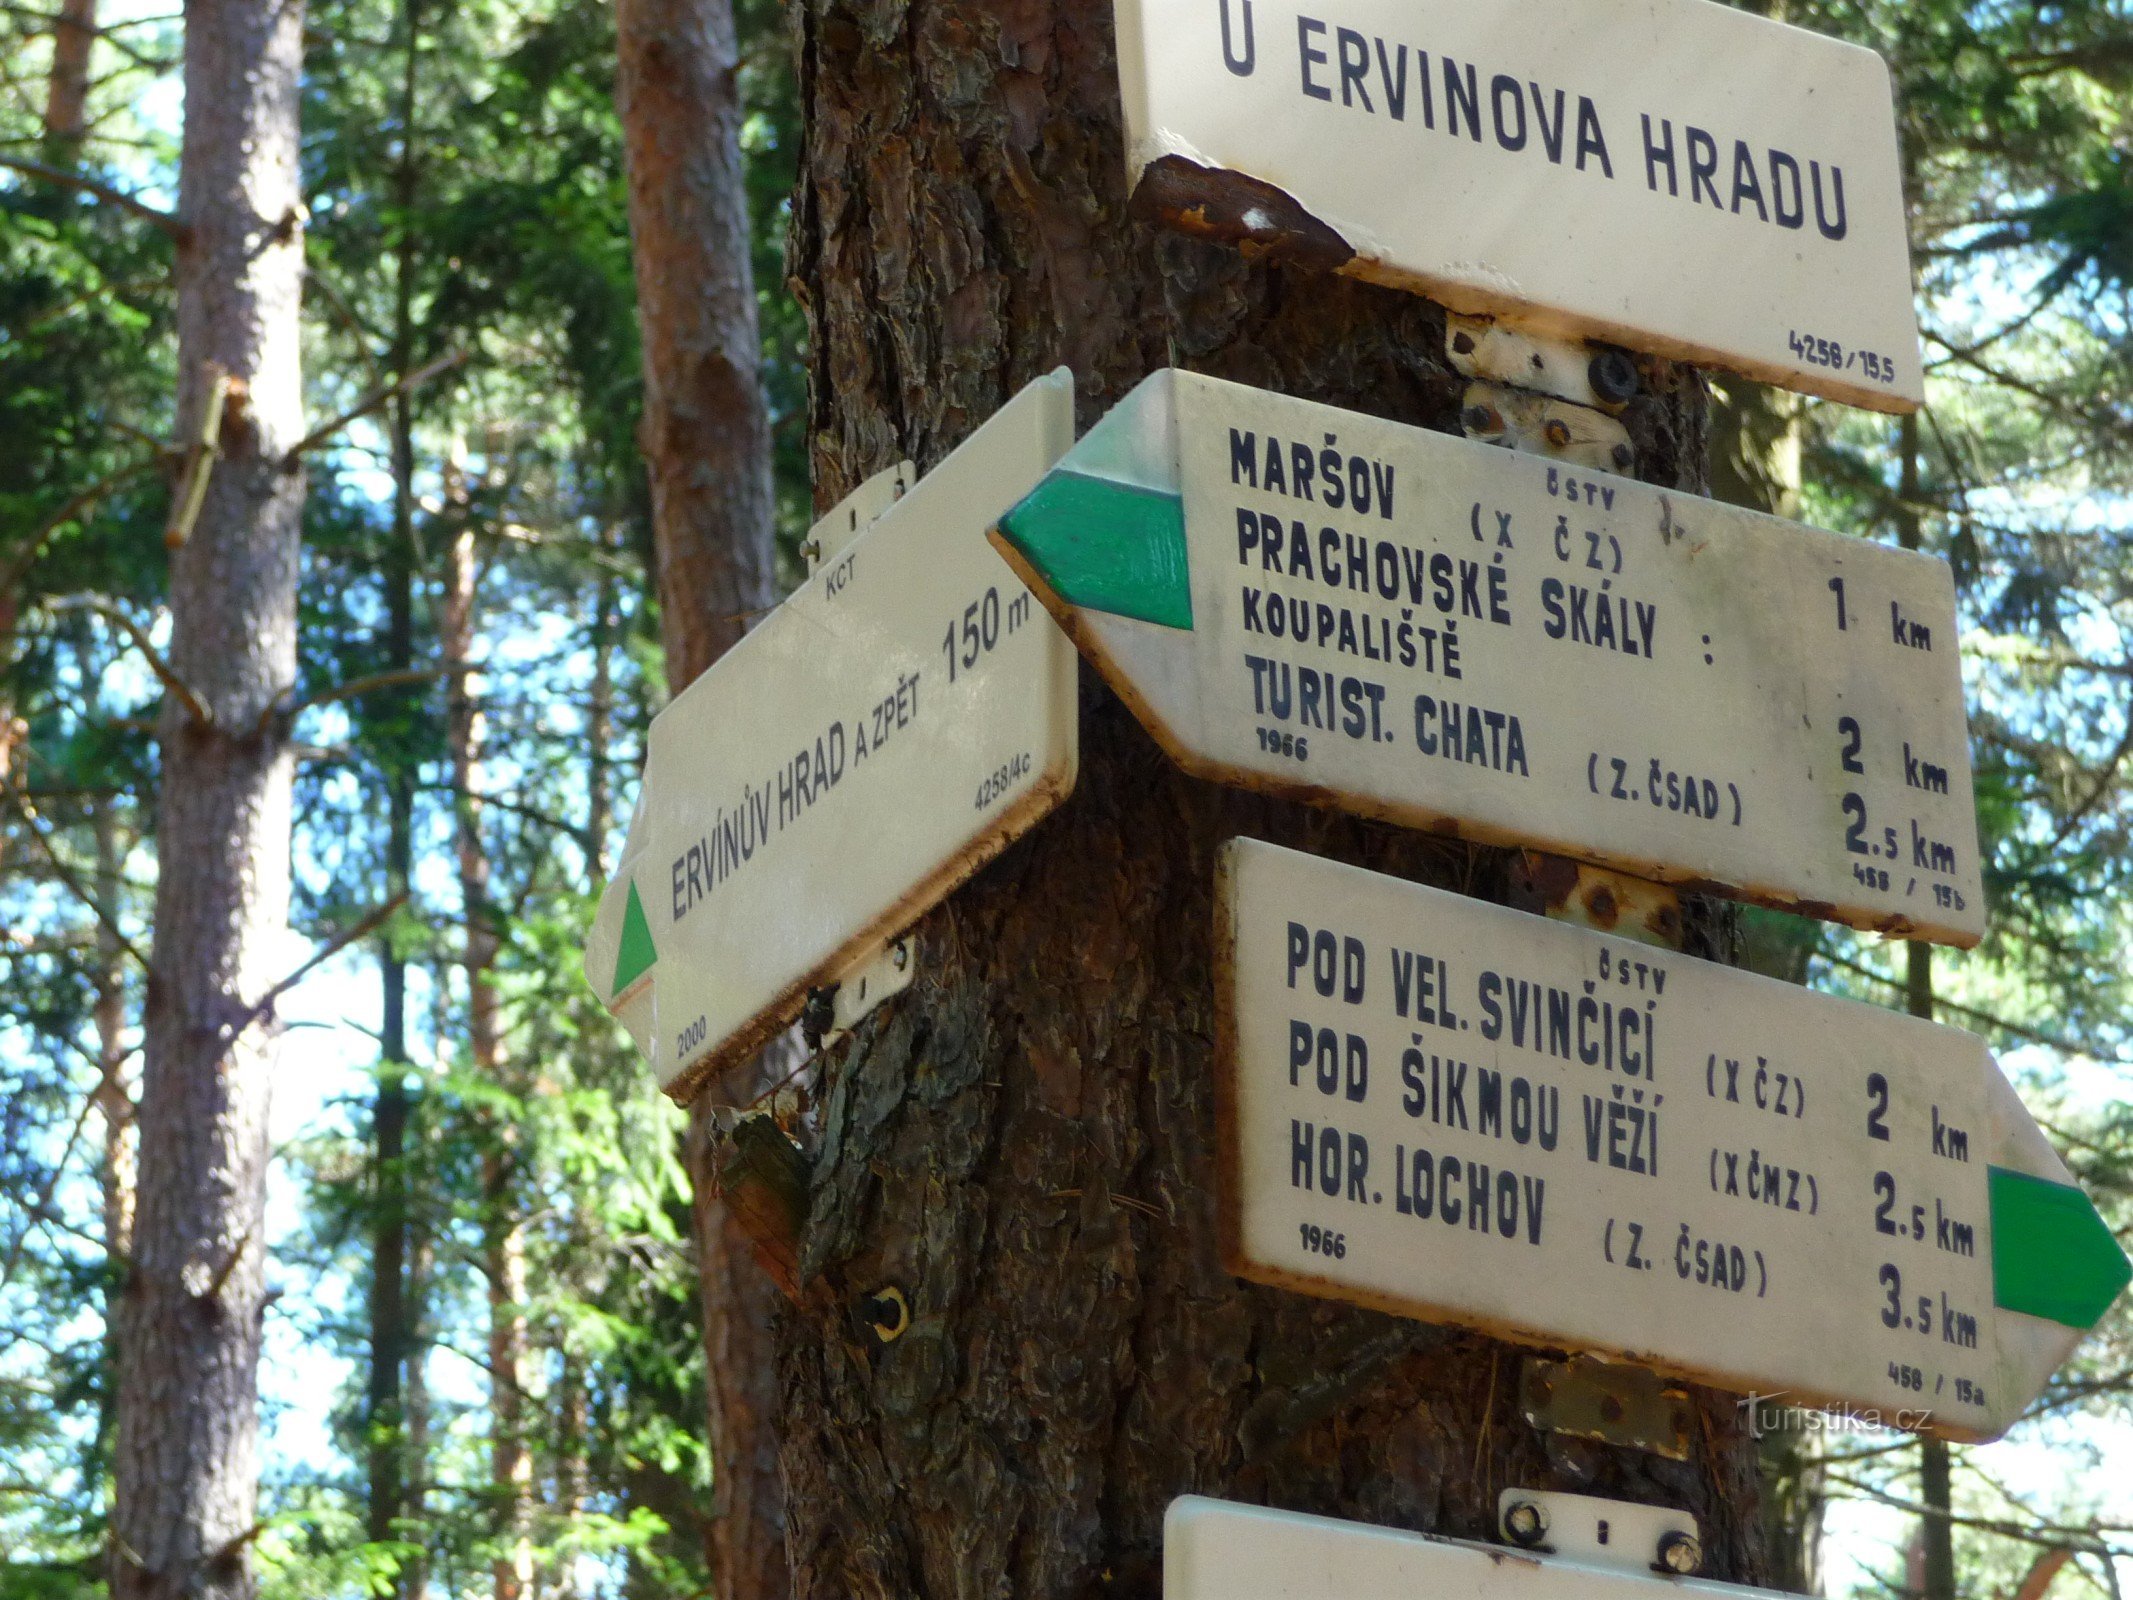 Prachovské skály - rundstrækning op til 10 km - Maršov via Ervínův hrad, pub. Vítkova og Mí